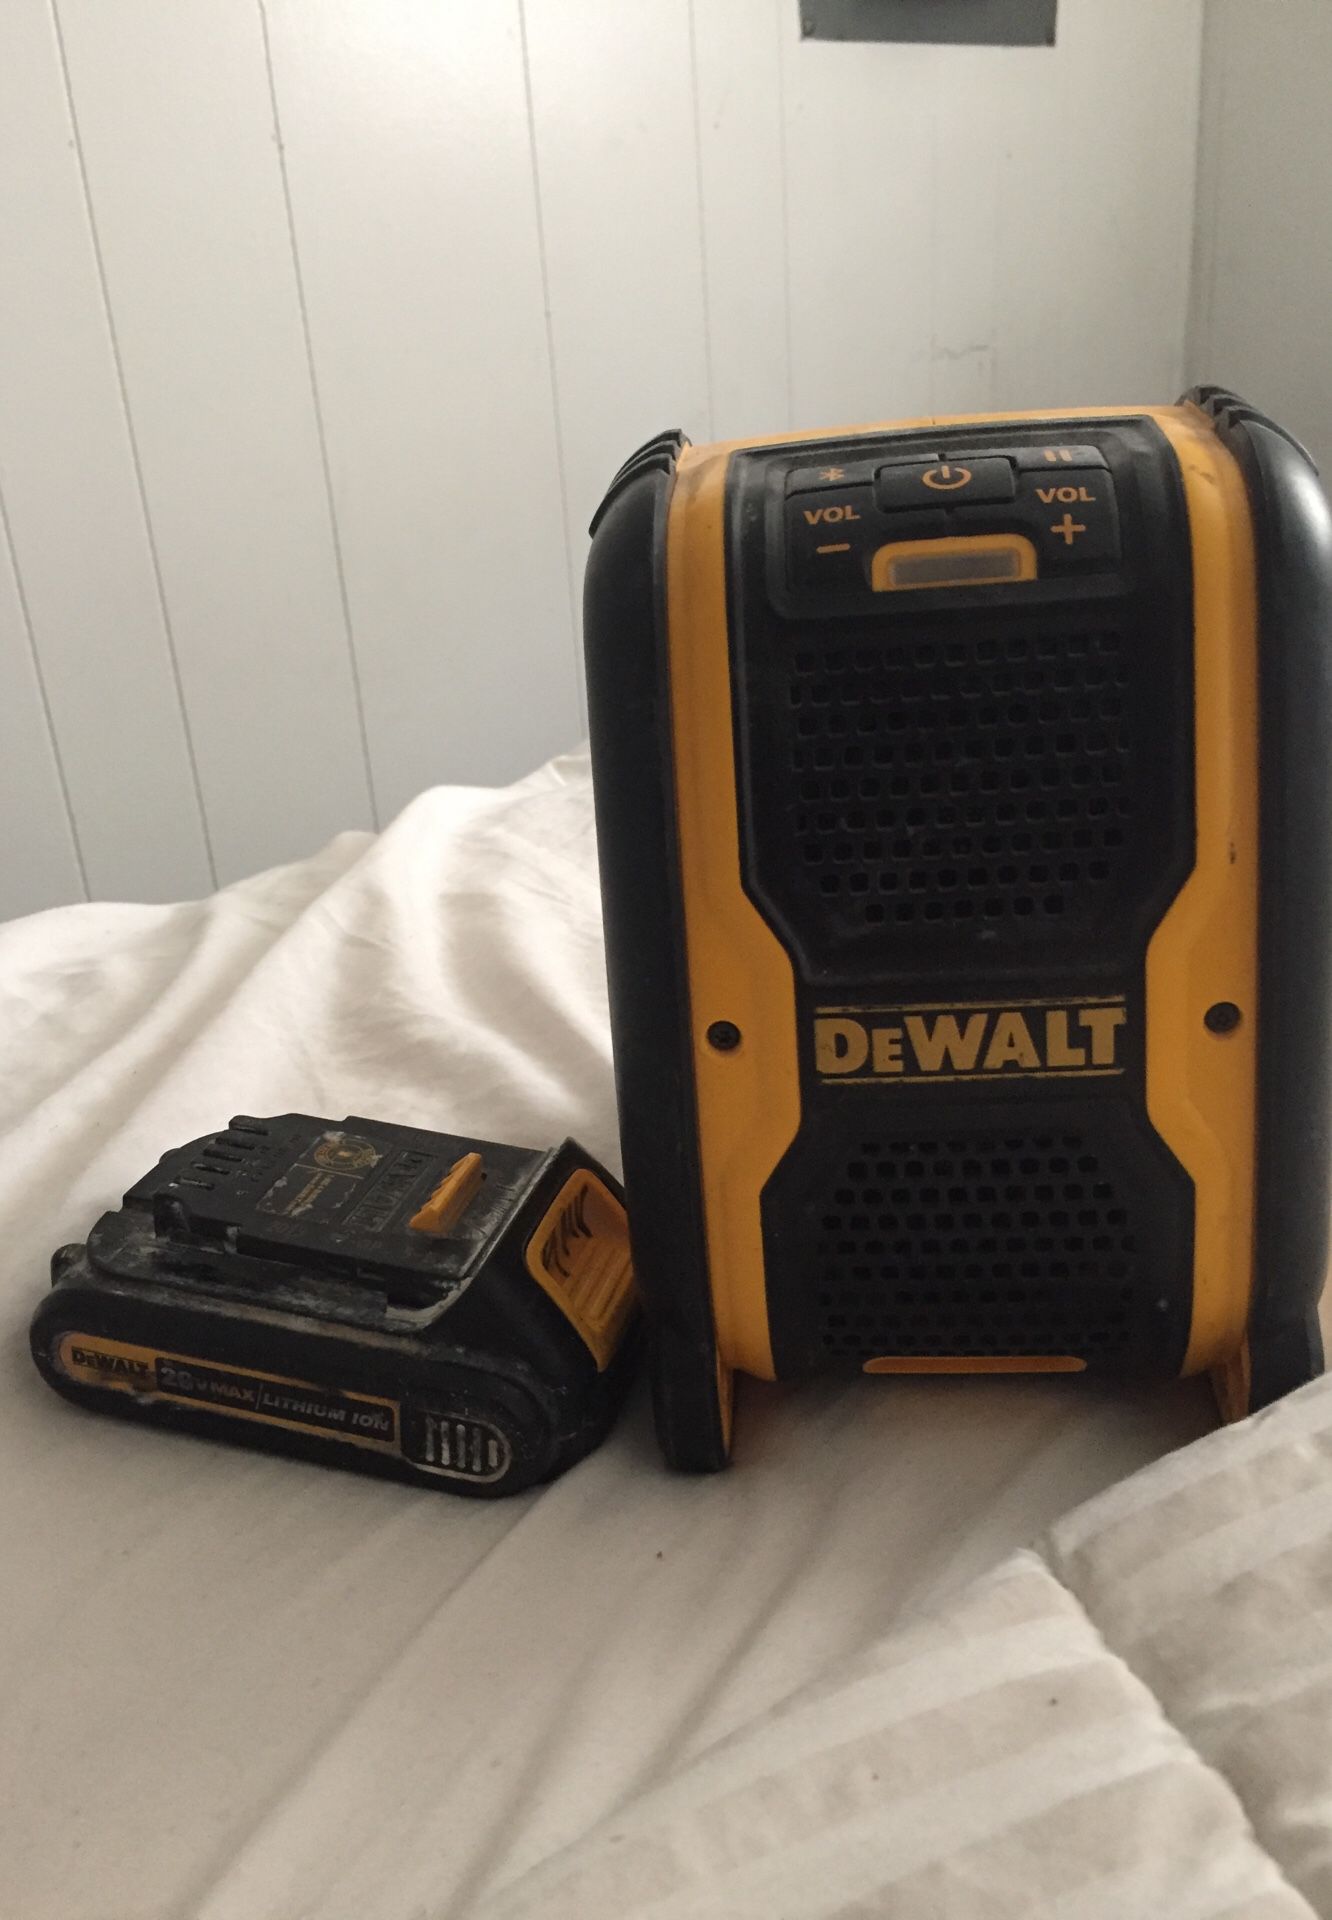 Dewalt radio and dewalt 20 vmax battery